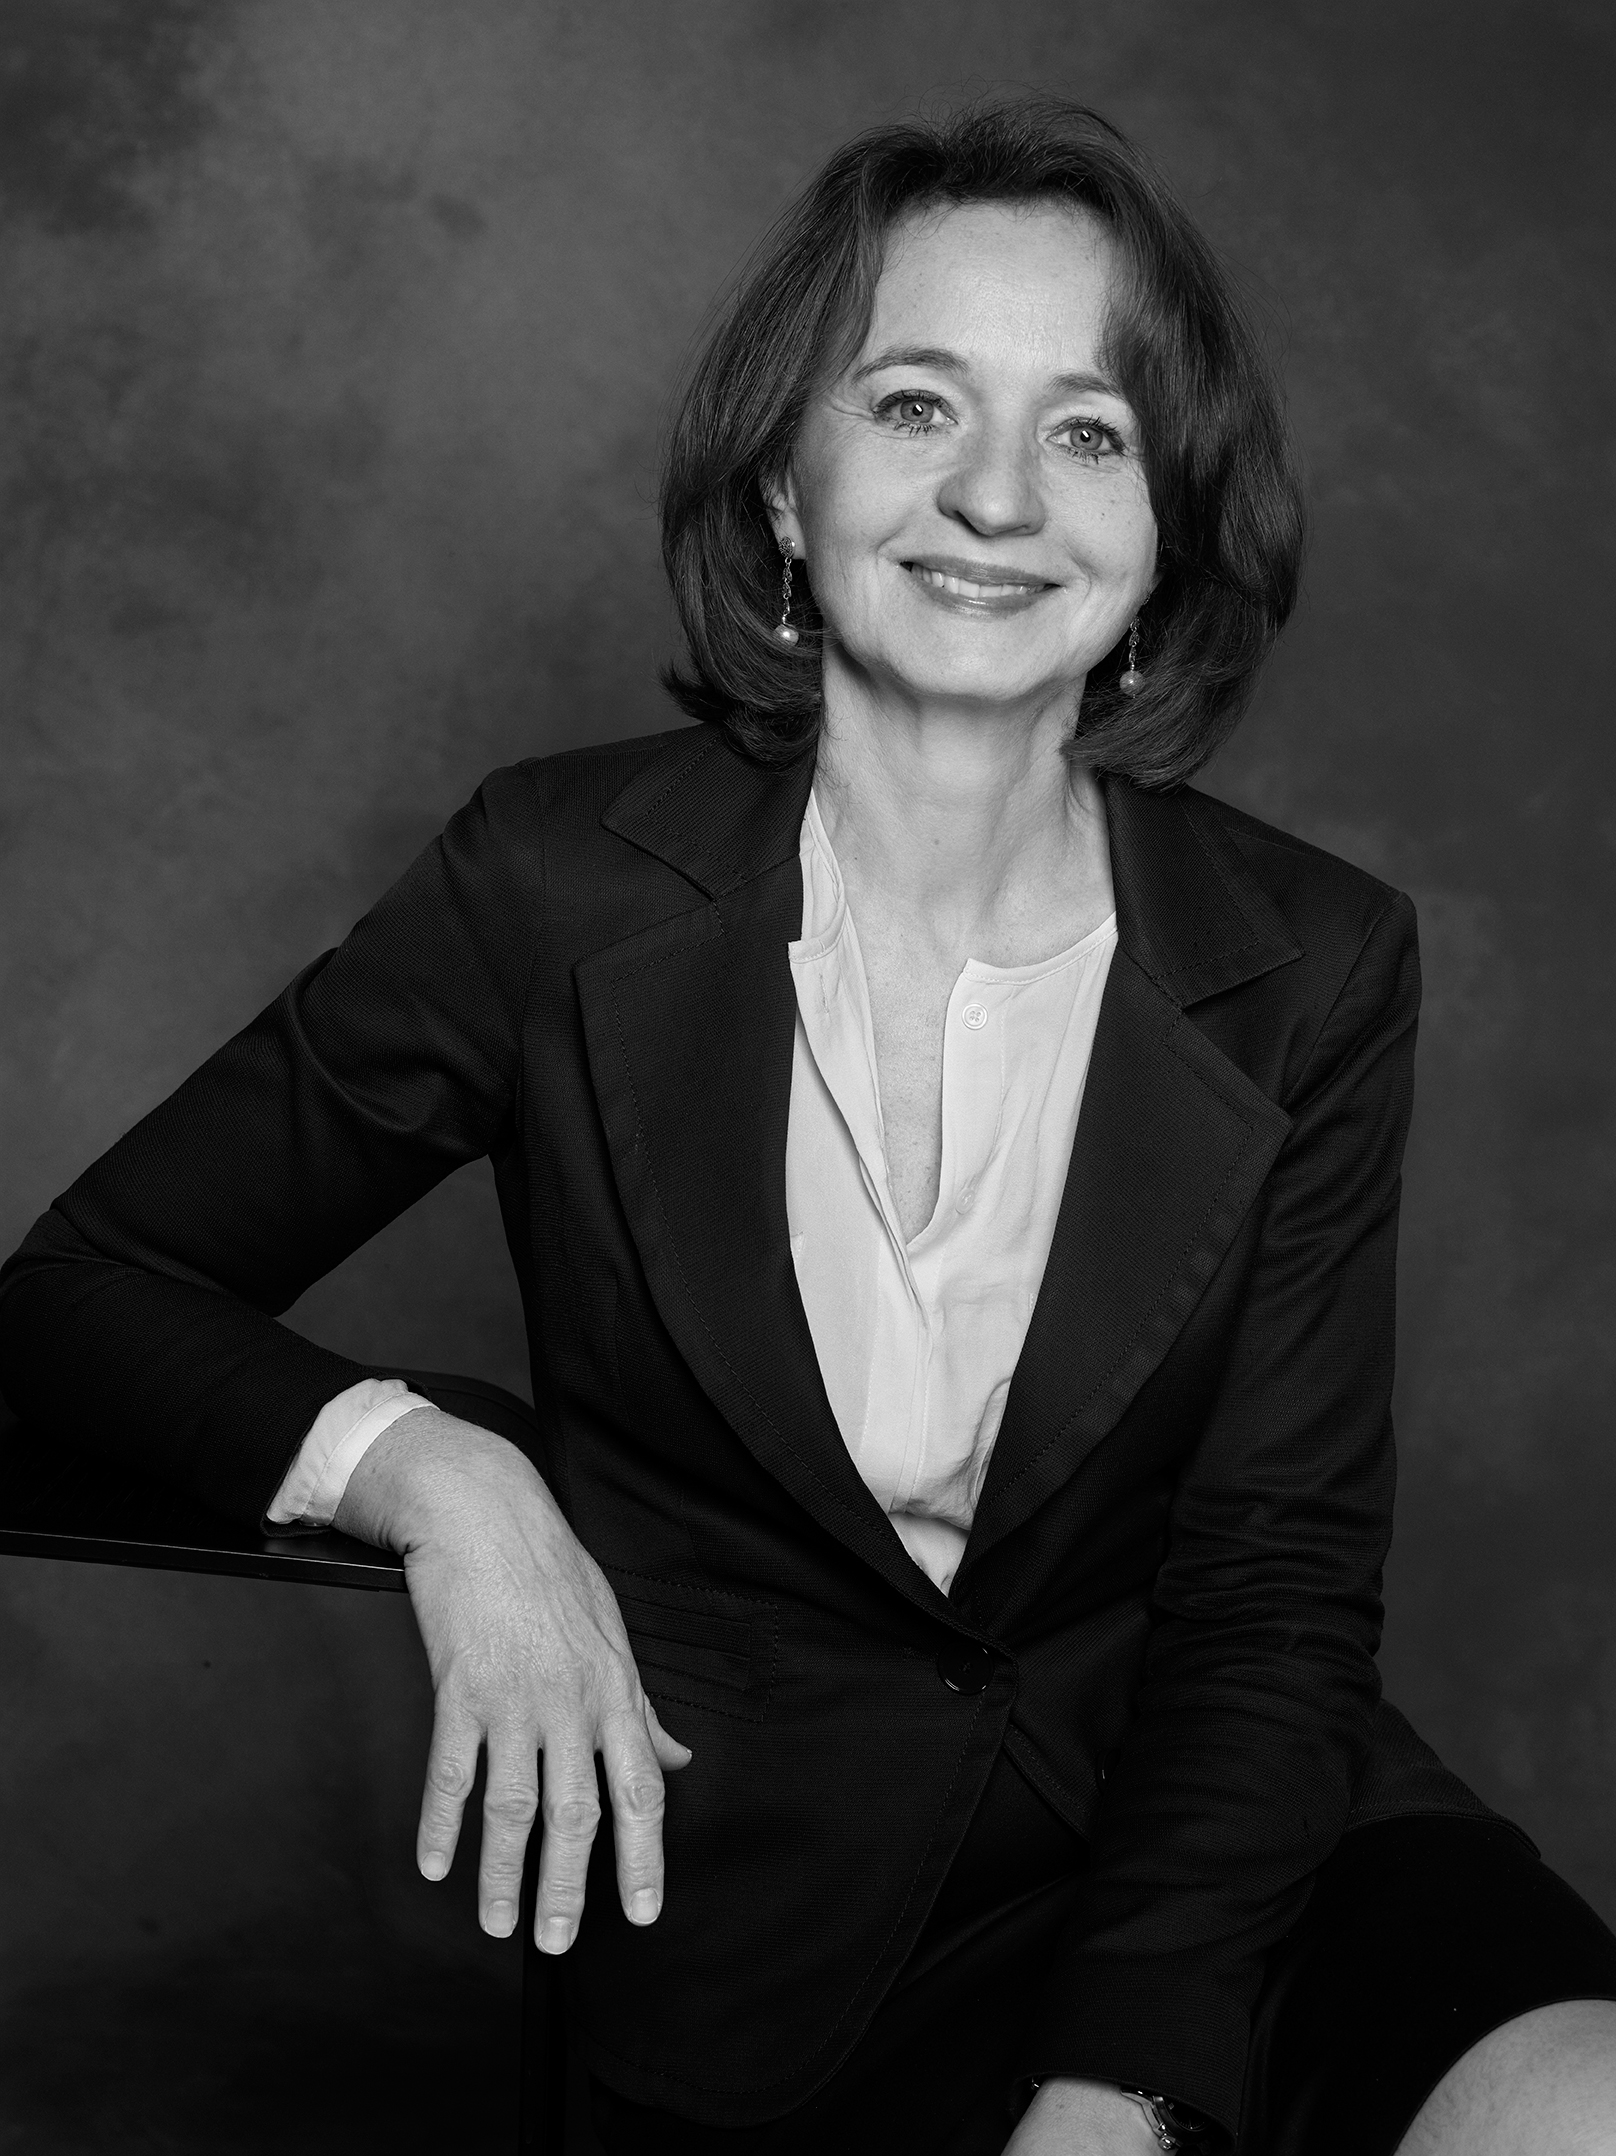 Marina Cavazzana, MD, PhD